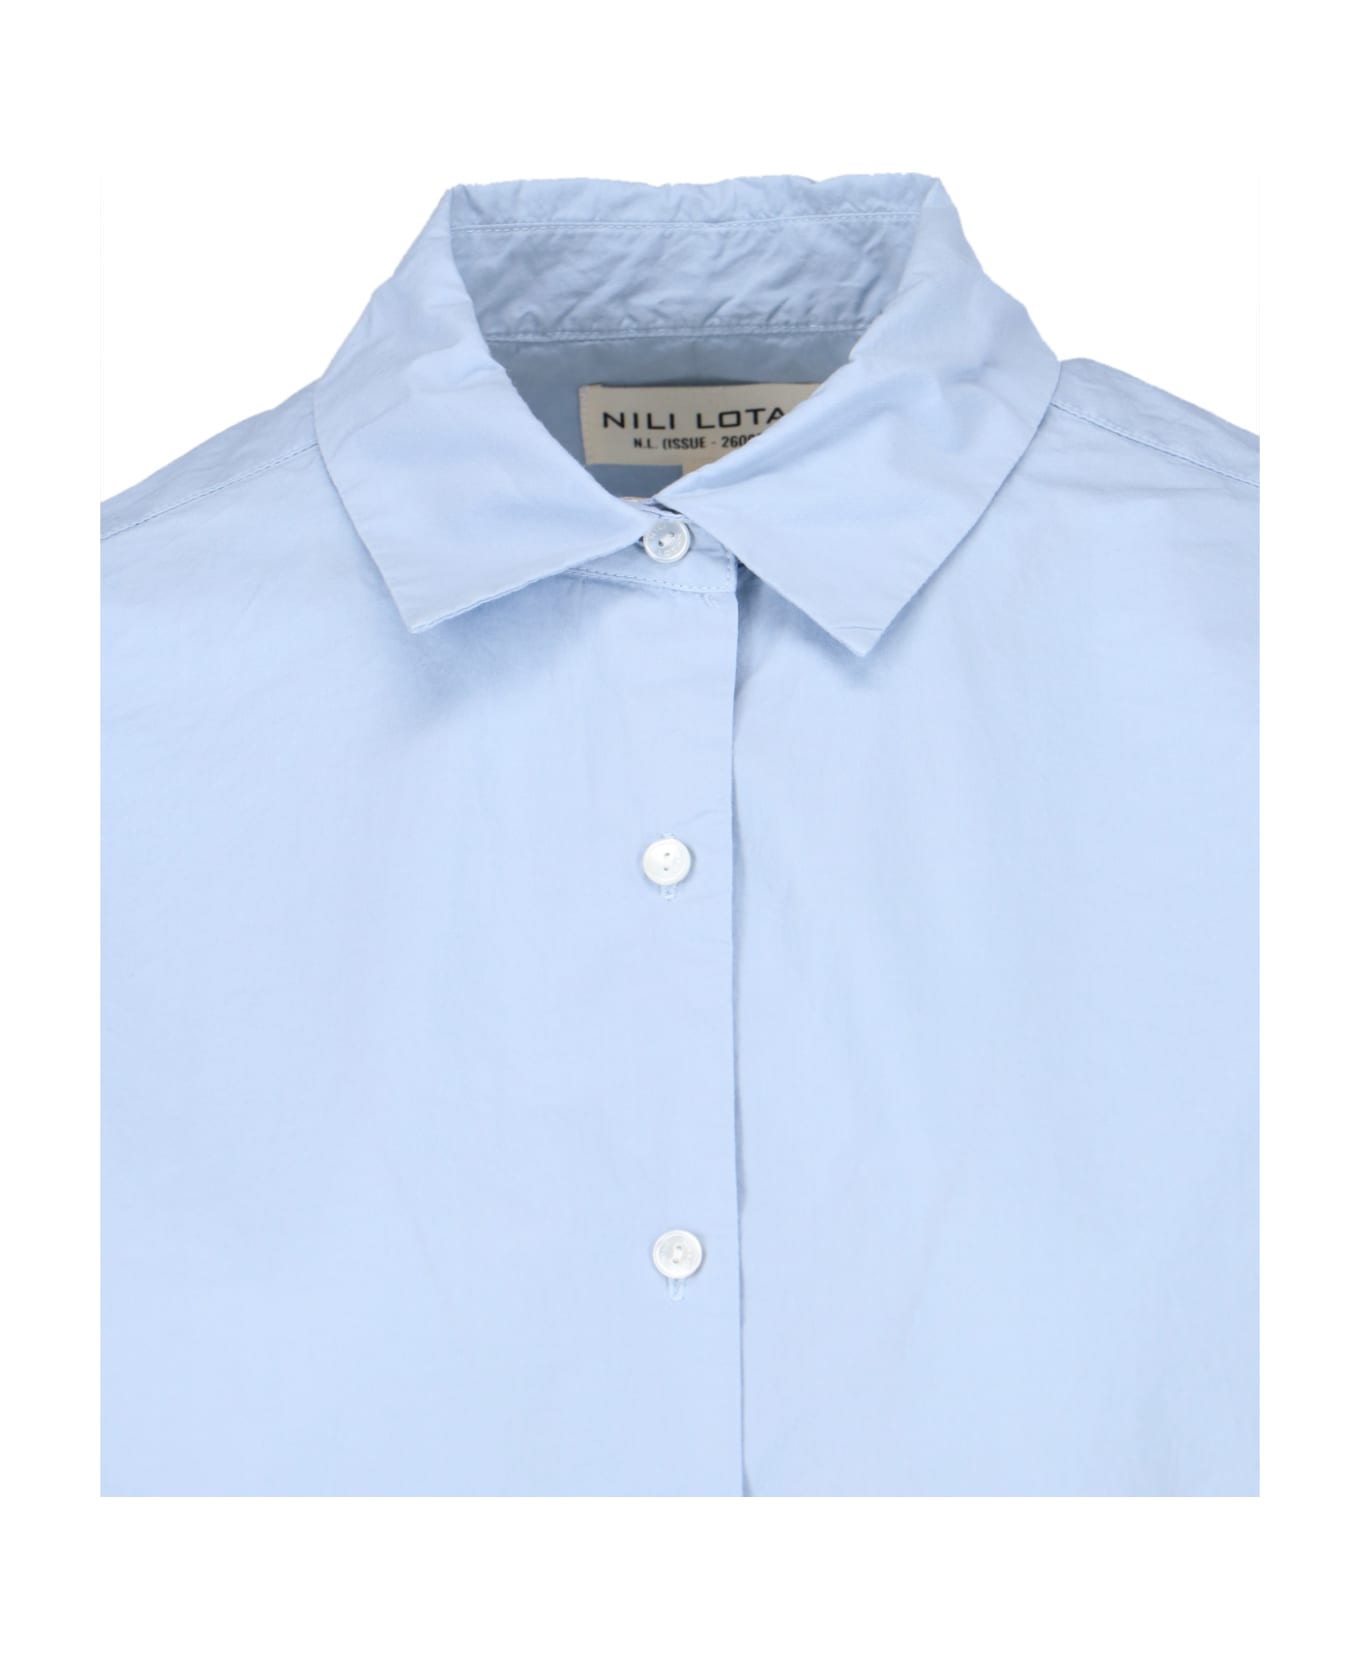 Nili Lotan 'yorke' Shirt - Light Blue